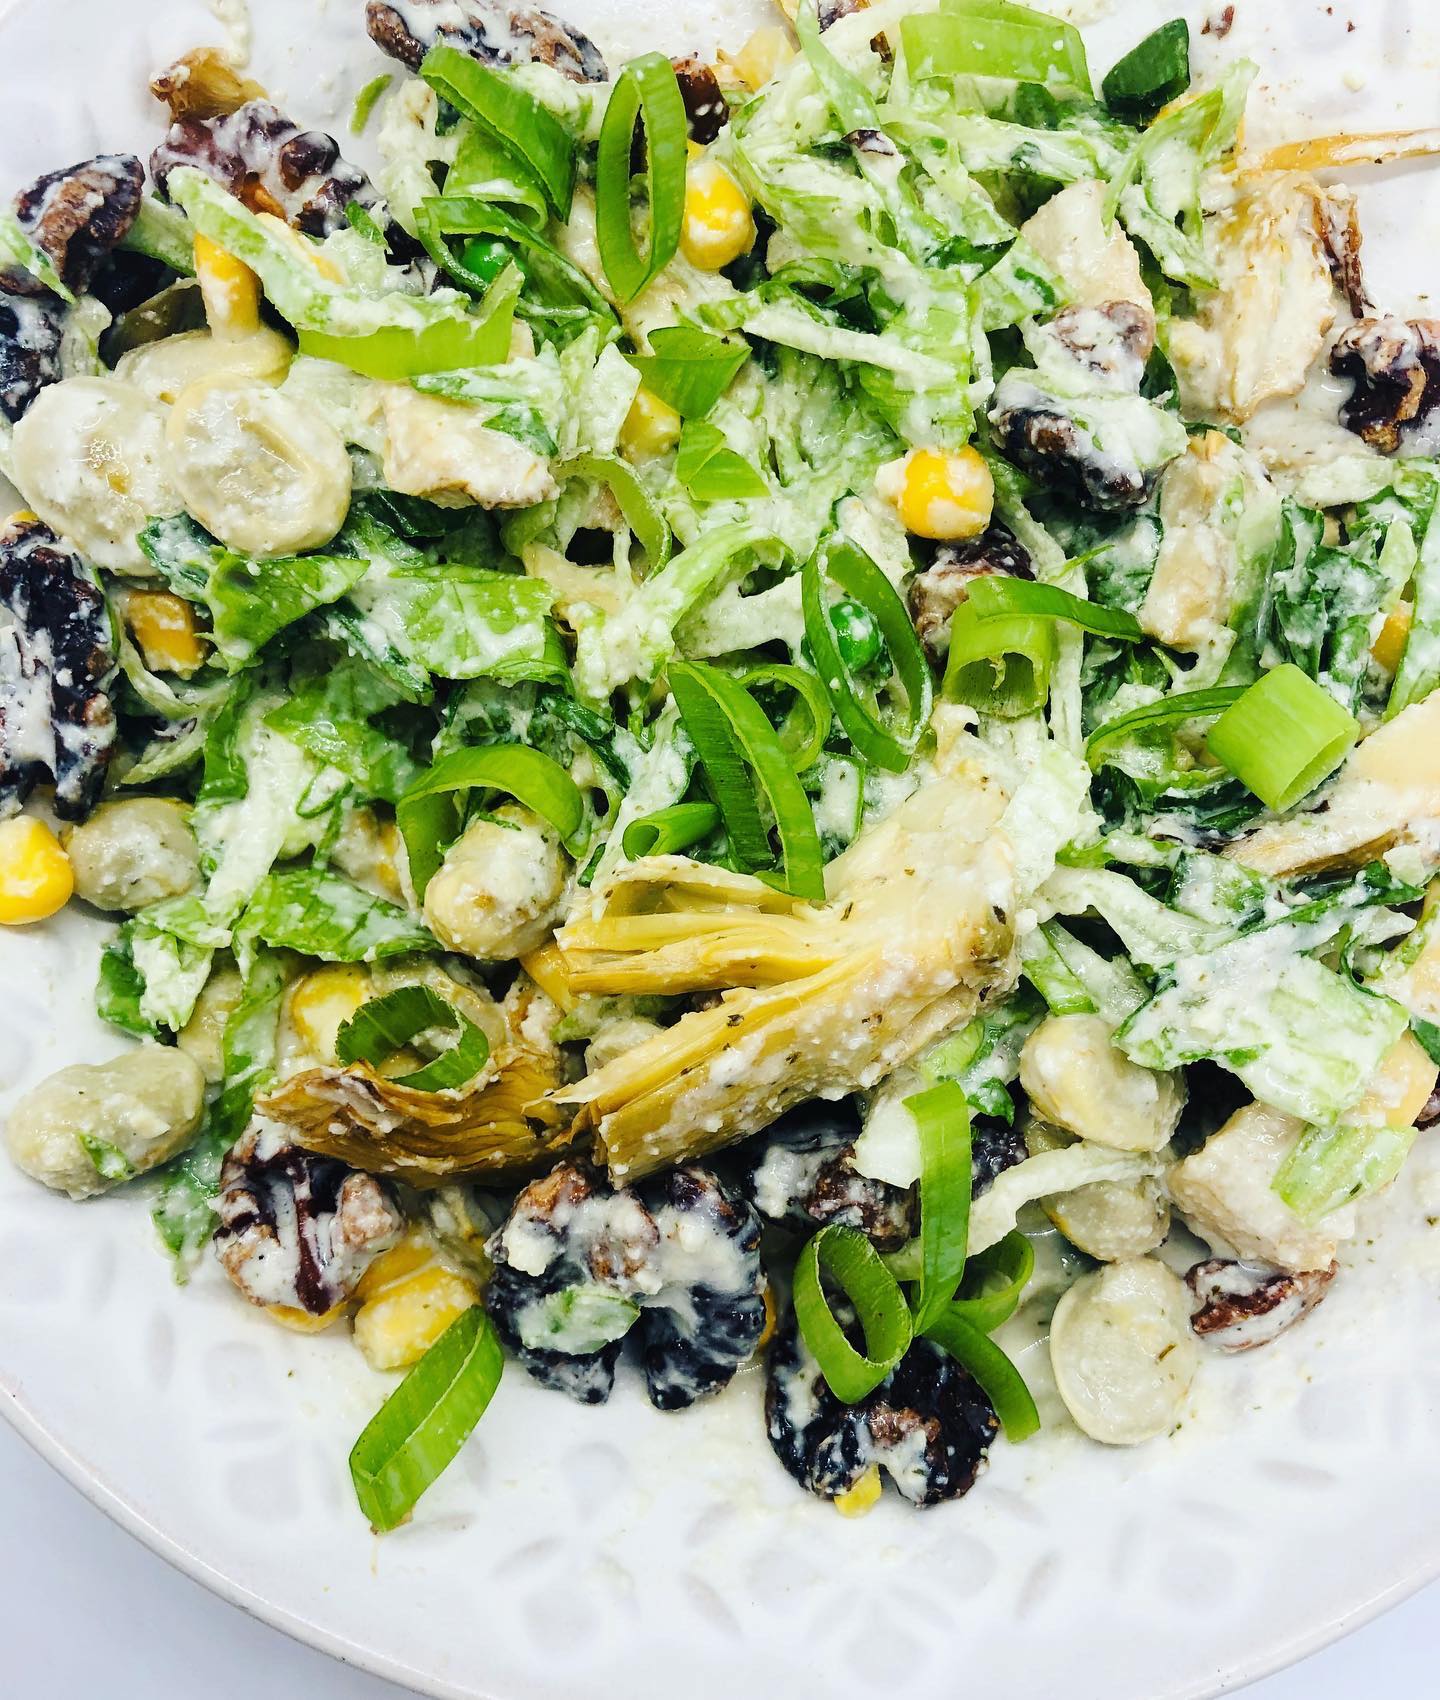 Quick Easy & Healthy Vegan 'Chicken' Salad